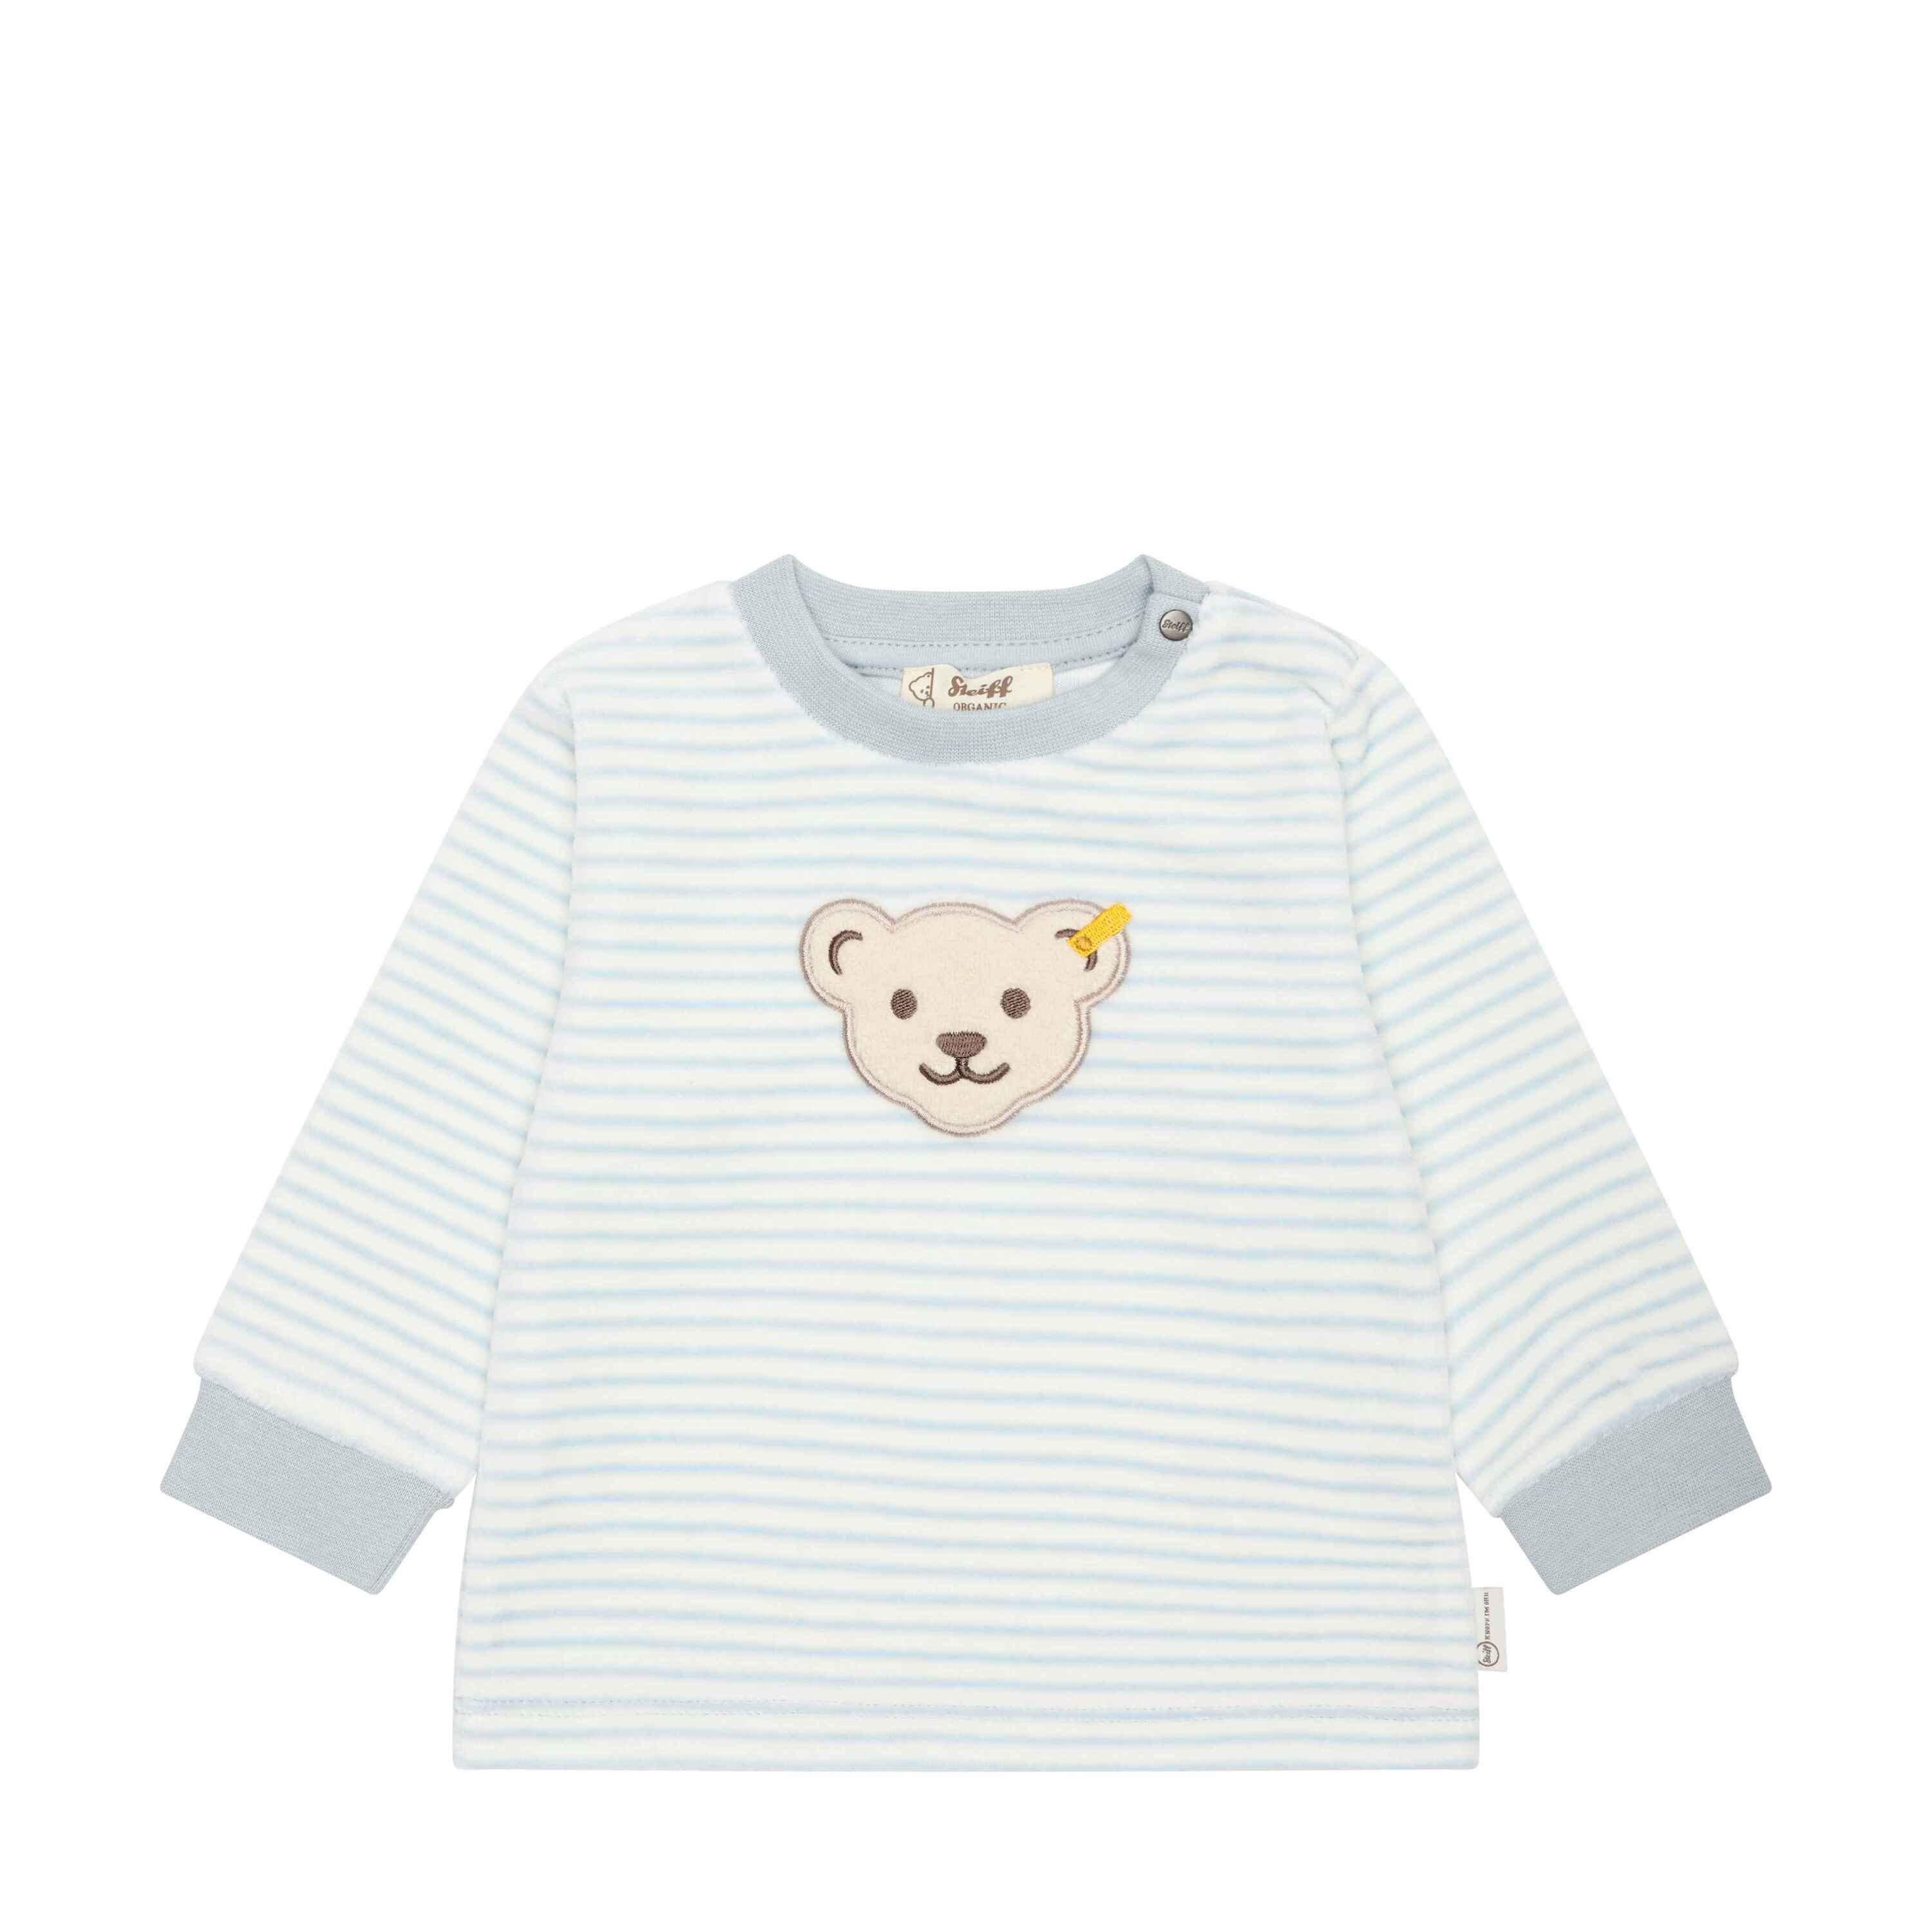 Steiff Sweatshirt Sweatshirt GOTS Baby Wellness lässig mit Teddykopf celestial blue